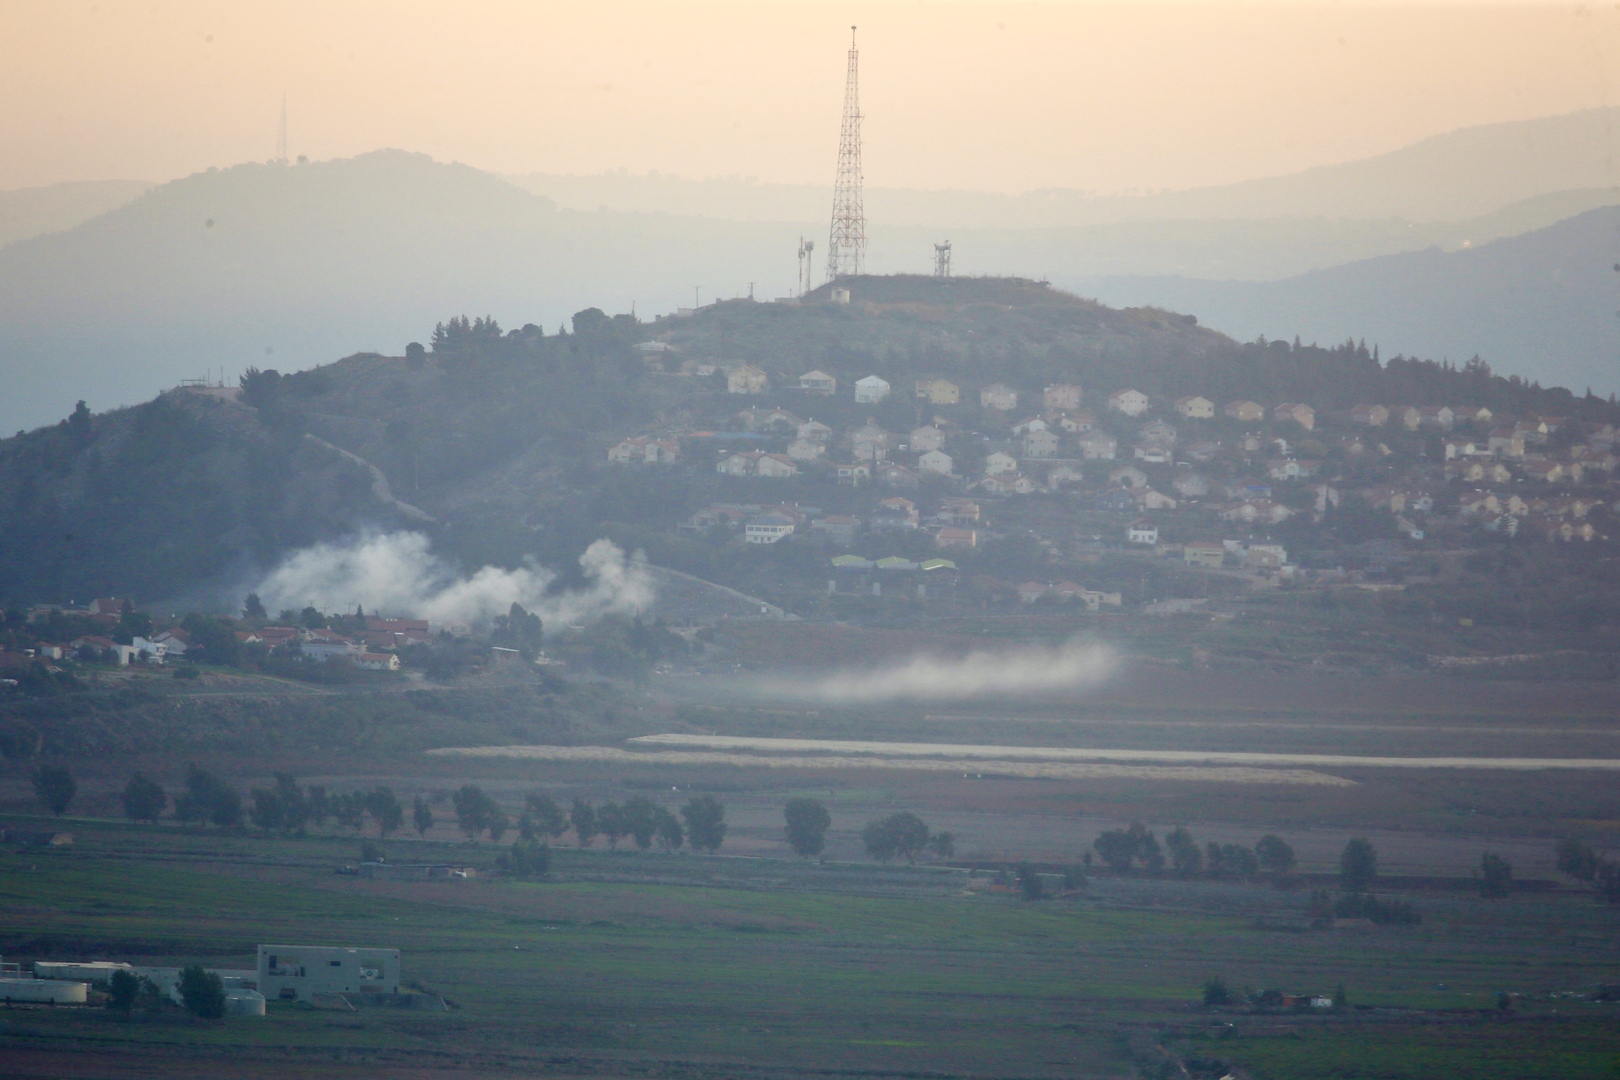 تجدد الاستهدافات الإسرائيلية جنوب لبنان.. والخارجية تحذر من امتداد الصراع إلى كل الشرق الأوسط